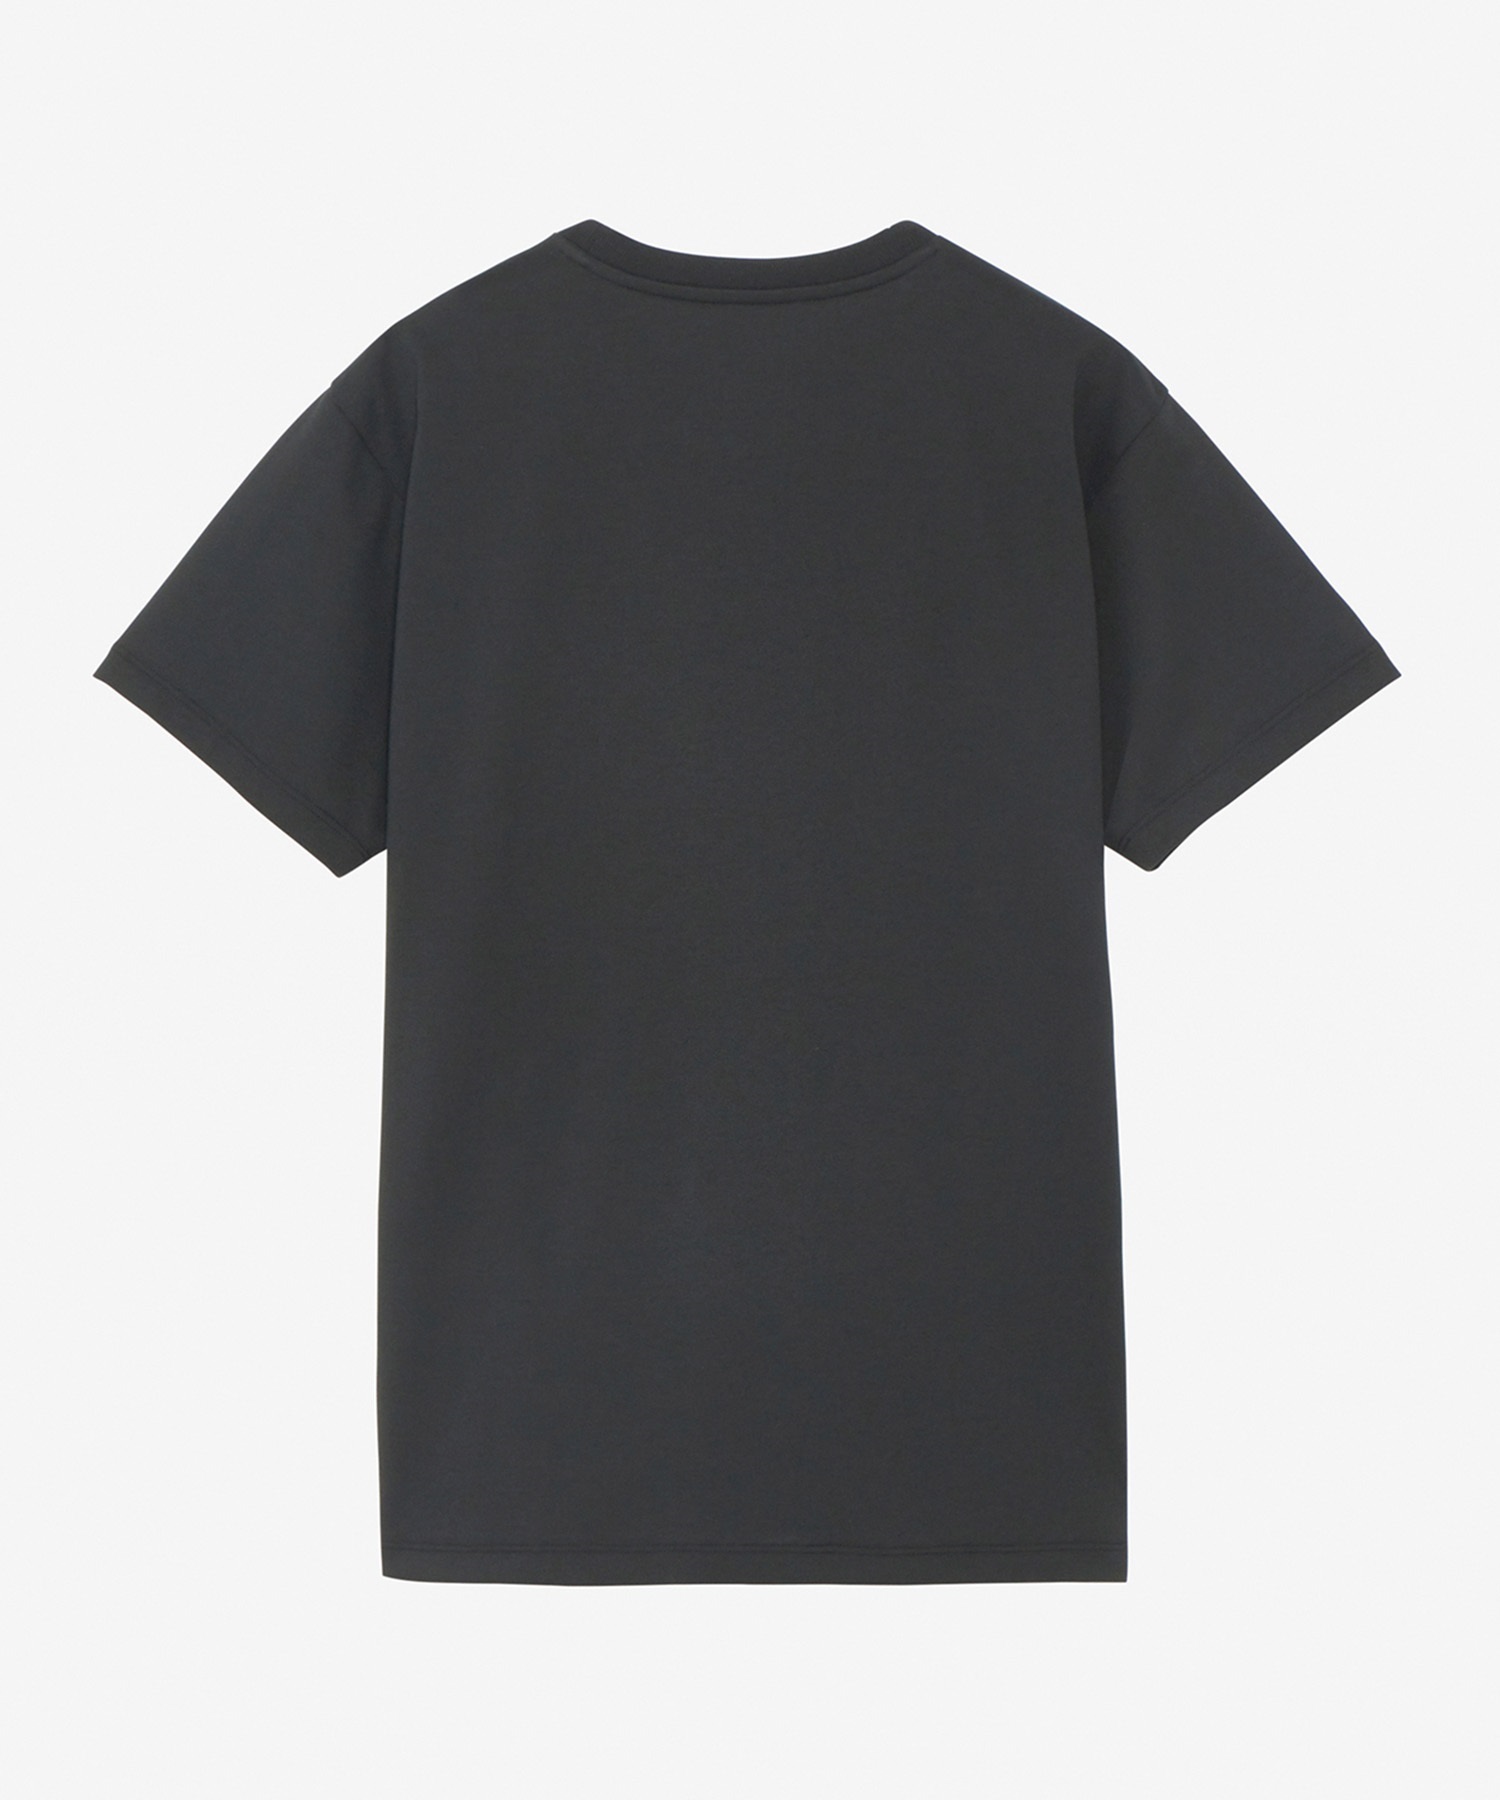 THE NORTH FACE ザ・ノース・フェイス レディース ショートスリーブスモールボックスロゴティー 半袖 Tシャツ ブラック NTW32445 K(K-S)